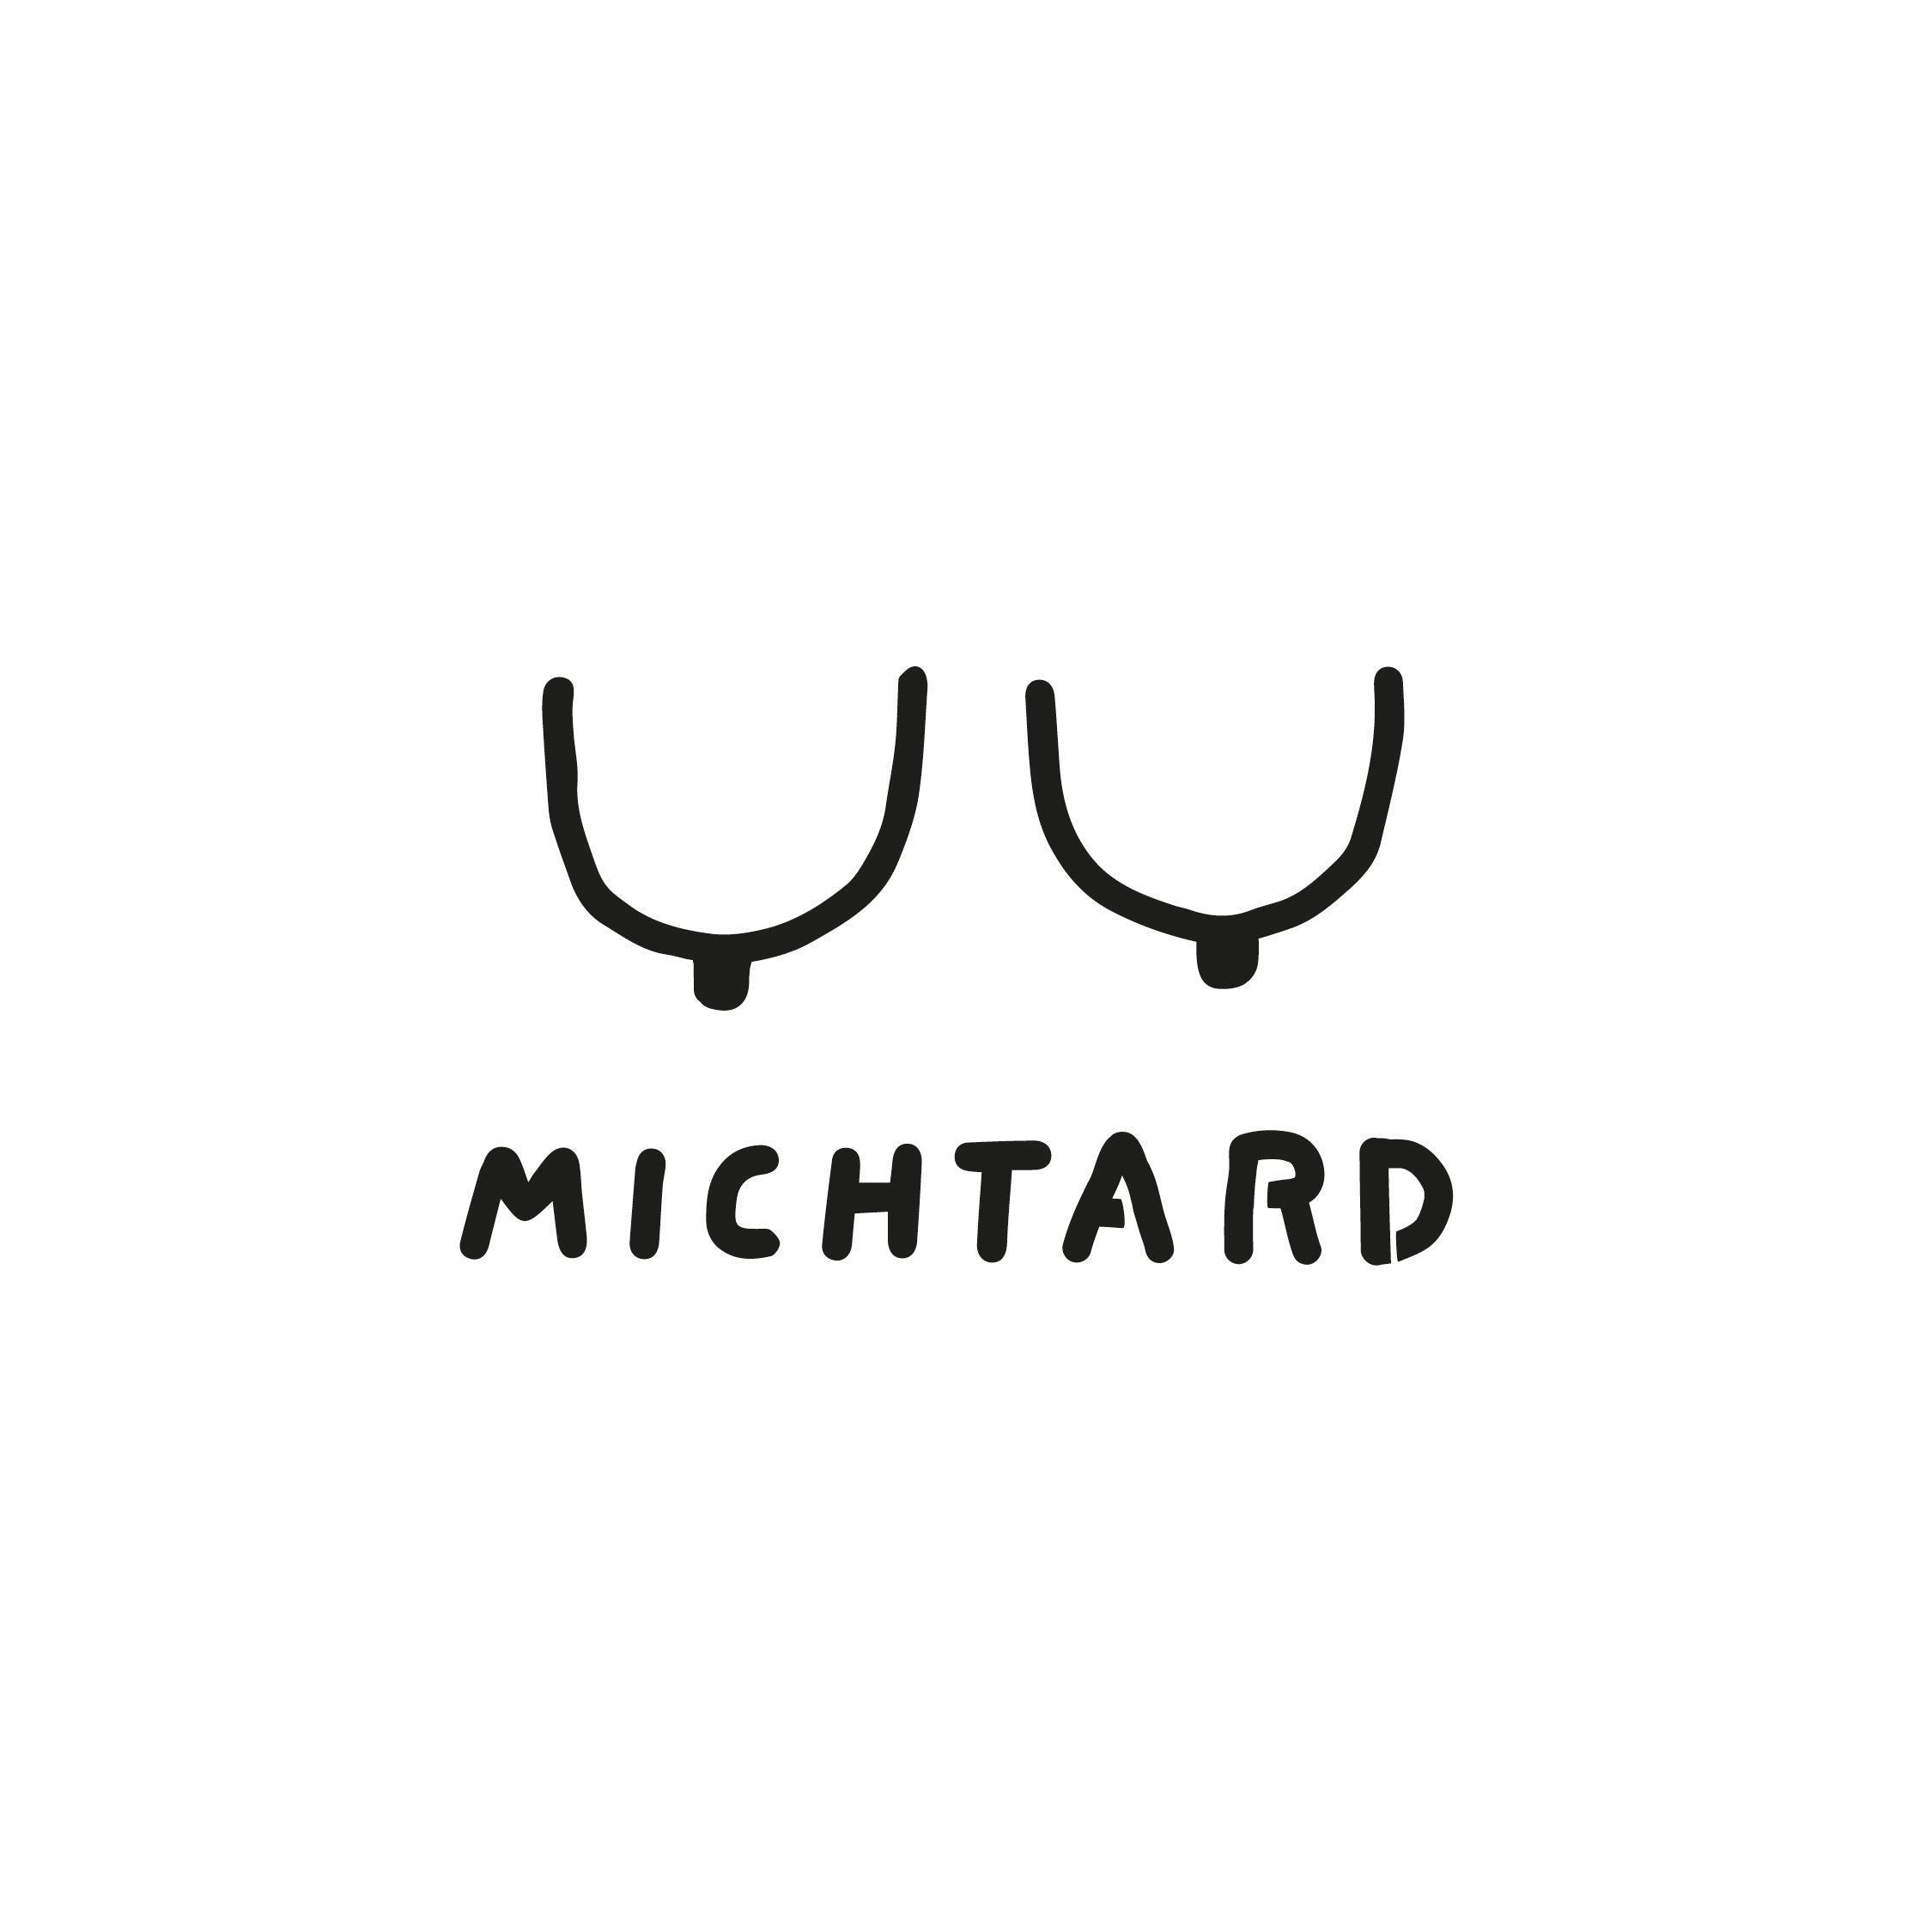 Michtard